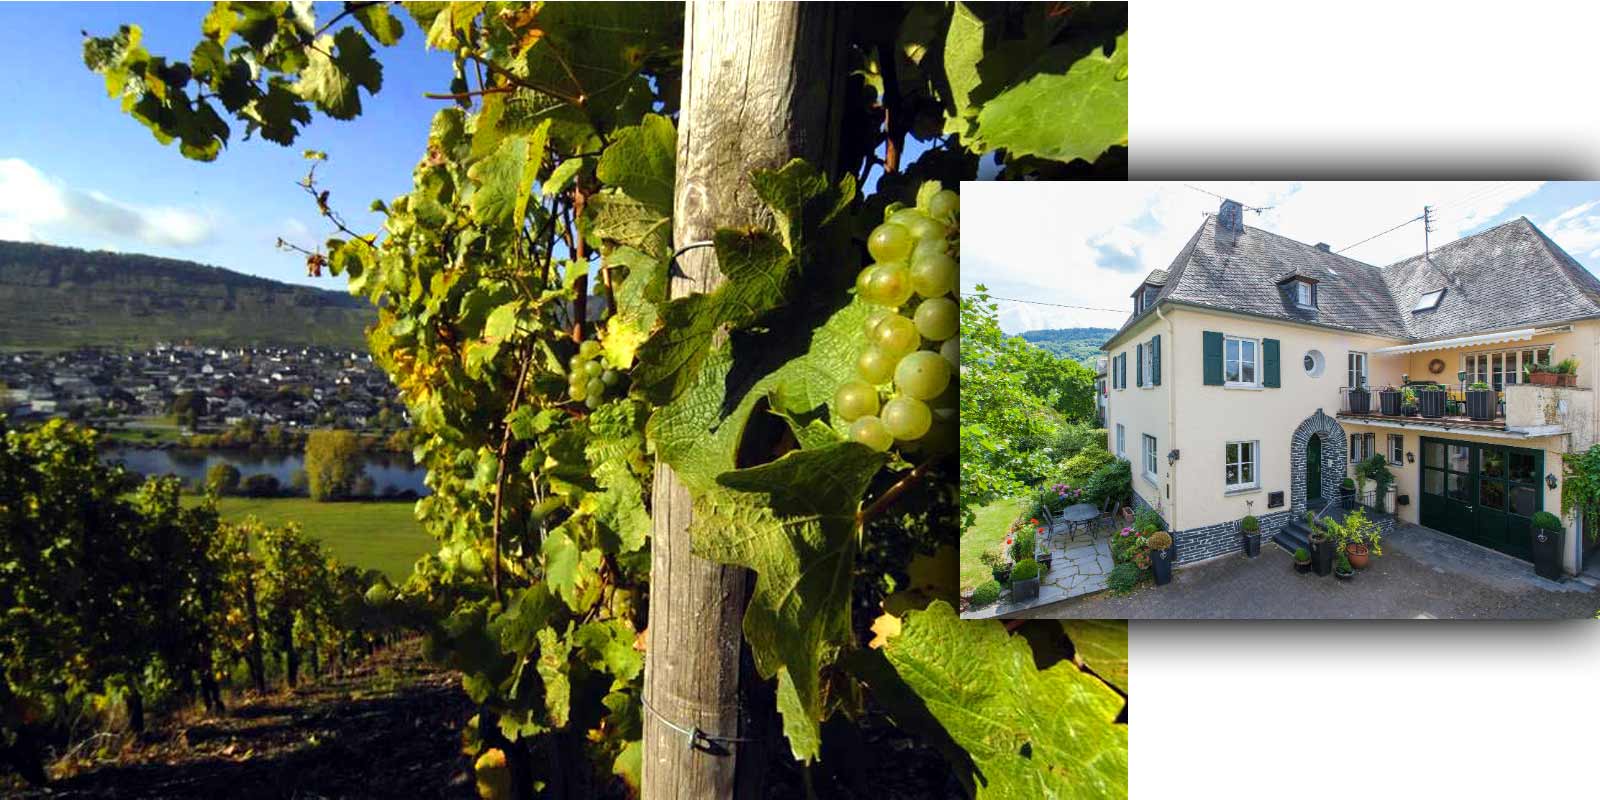 Bodega Grans-Fassian - Region vinicola del Mosela Gerhard Grans tomo las riendas del negocio vitivinicola de manos de su padre Matthias en 1982 y amplio la superficie de vinedos de 4 hectareas hasta las 9,5 hectareas actuales, de las cuales el 88% esta plantada con Riesling, el 10% con Pinot Blanc y el 2% con Pinot Gris. Los mejores lugares de la bodega tambien estan clasificados: se clasifican en la categoria de cultivo mas alta.